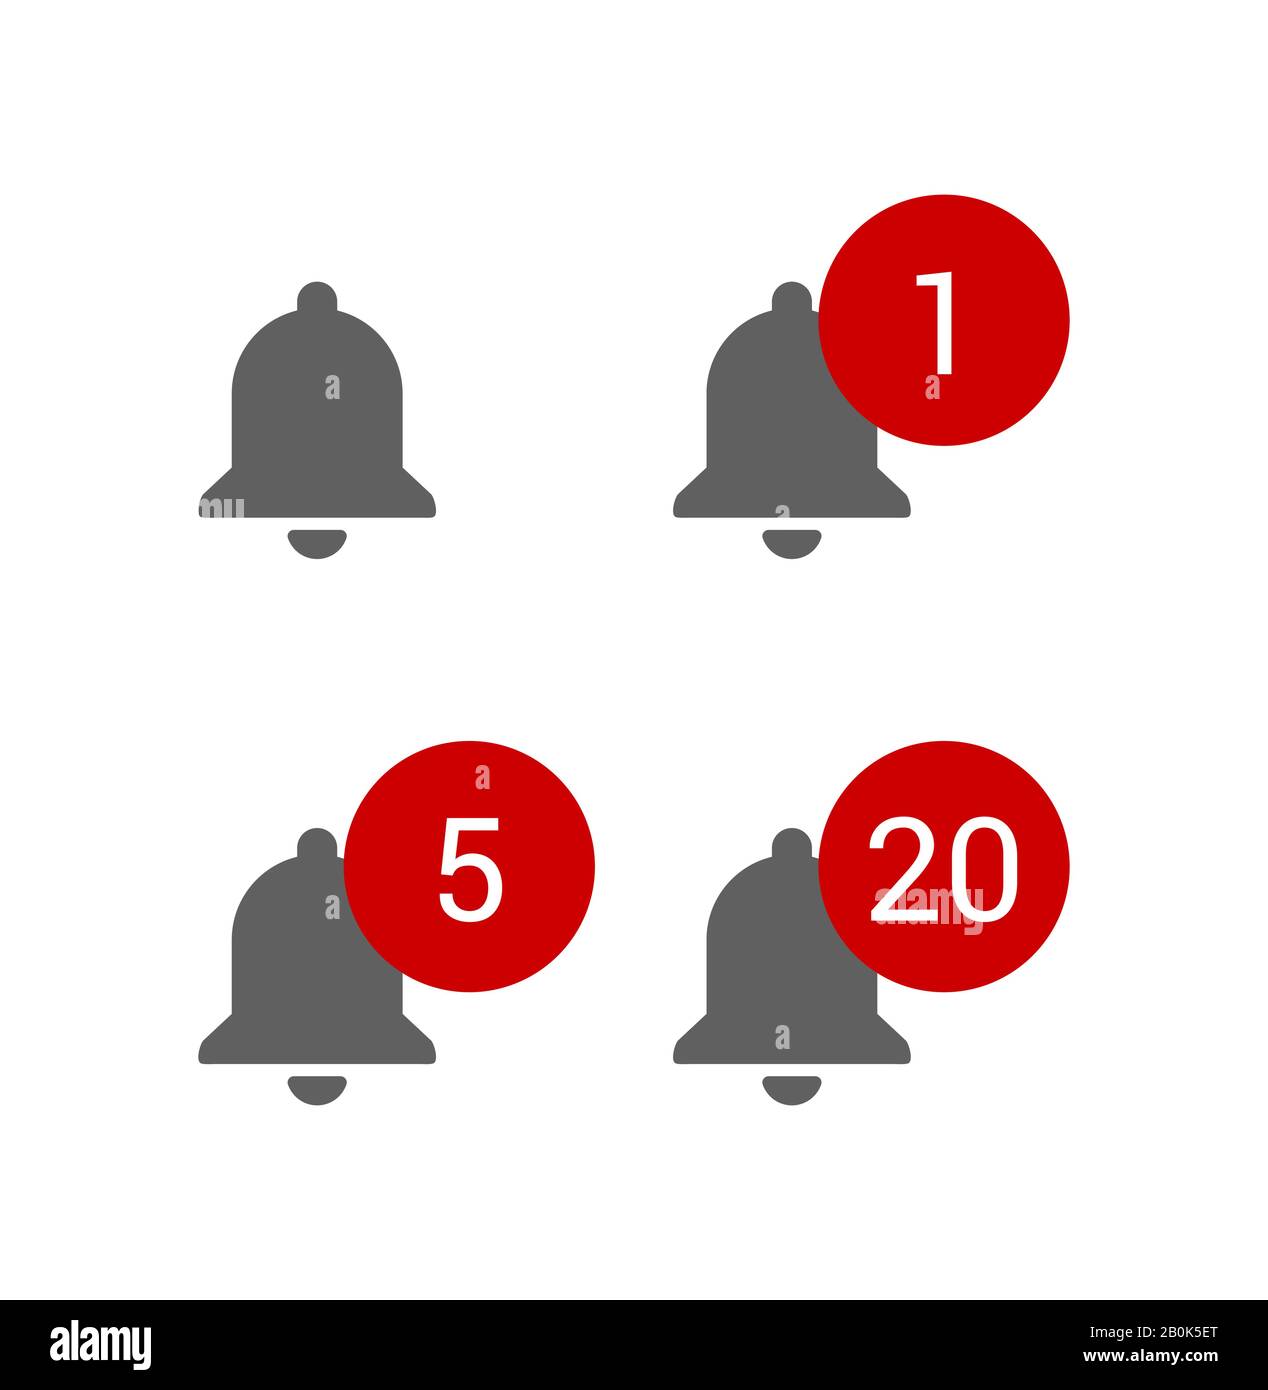 Campanelli grigi con avvisi di messaggi rotondi rossi, notifiche di chat o sottoscrizione per blog video, set di icone smm, illustrazione vettoriale in stile piatto. Illustrazione Vettoriale